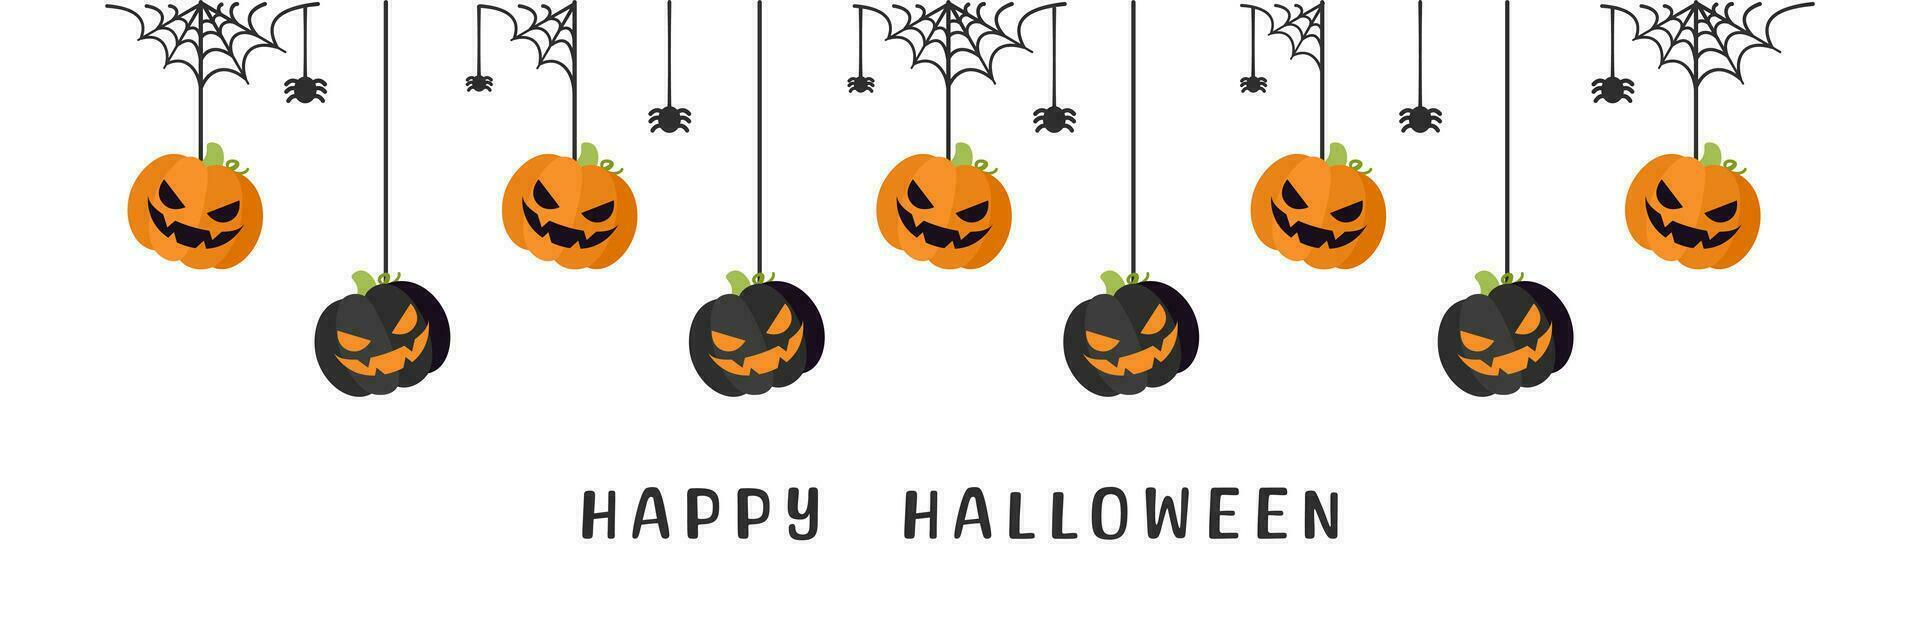 contento Halloween confine bandiera Jack o lanterna zucche sospeso a partire dal ragno ragnatele. spaventoso ornamenti decorazione vettore illustrazione, trucco o trattare festa invito